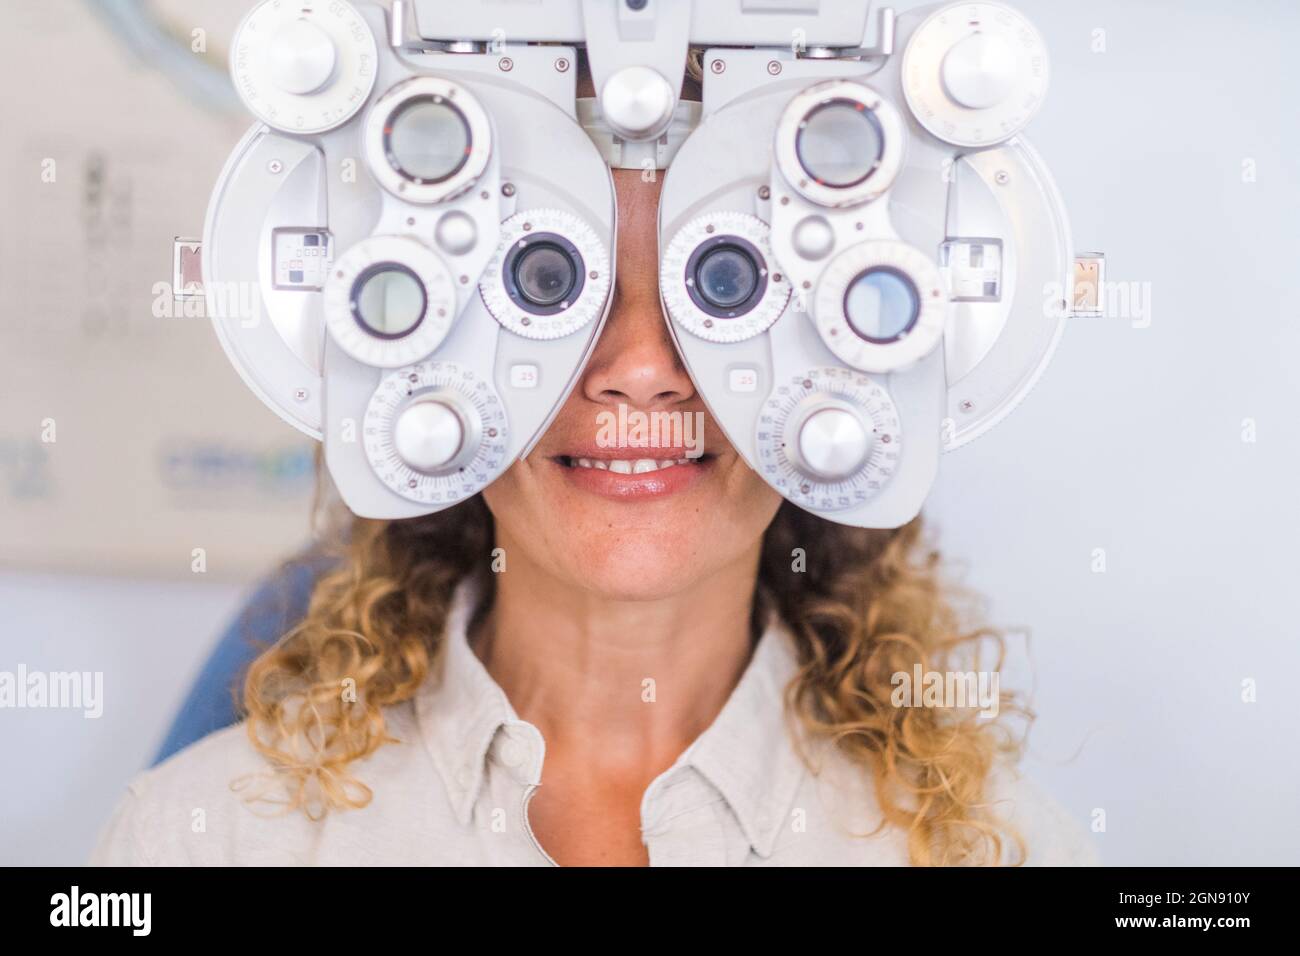 Patiente souriante examinant la vue par le biais d'un phoropter dans une clinique médicale Banque D'Images